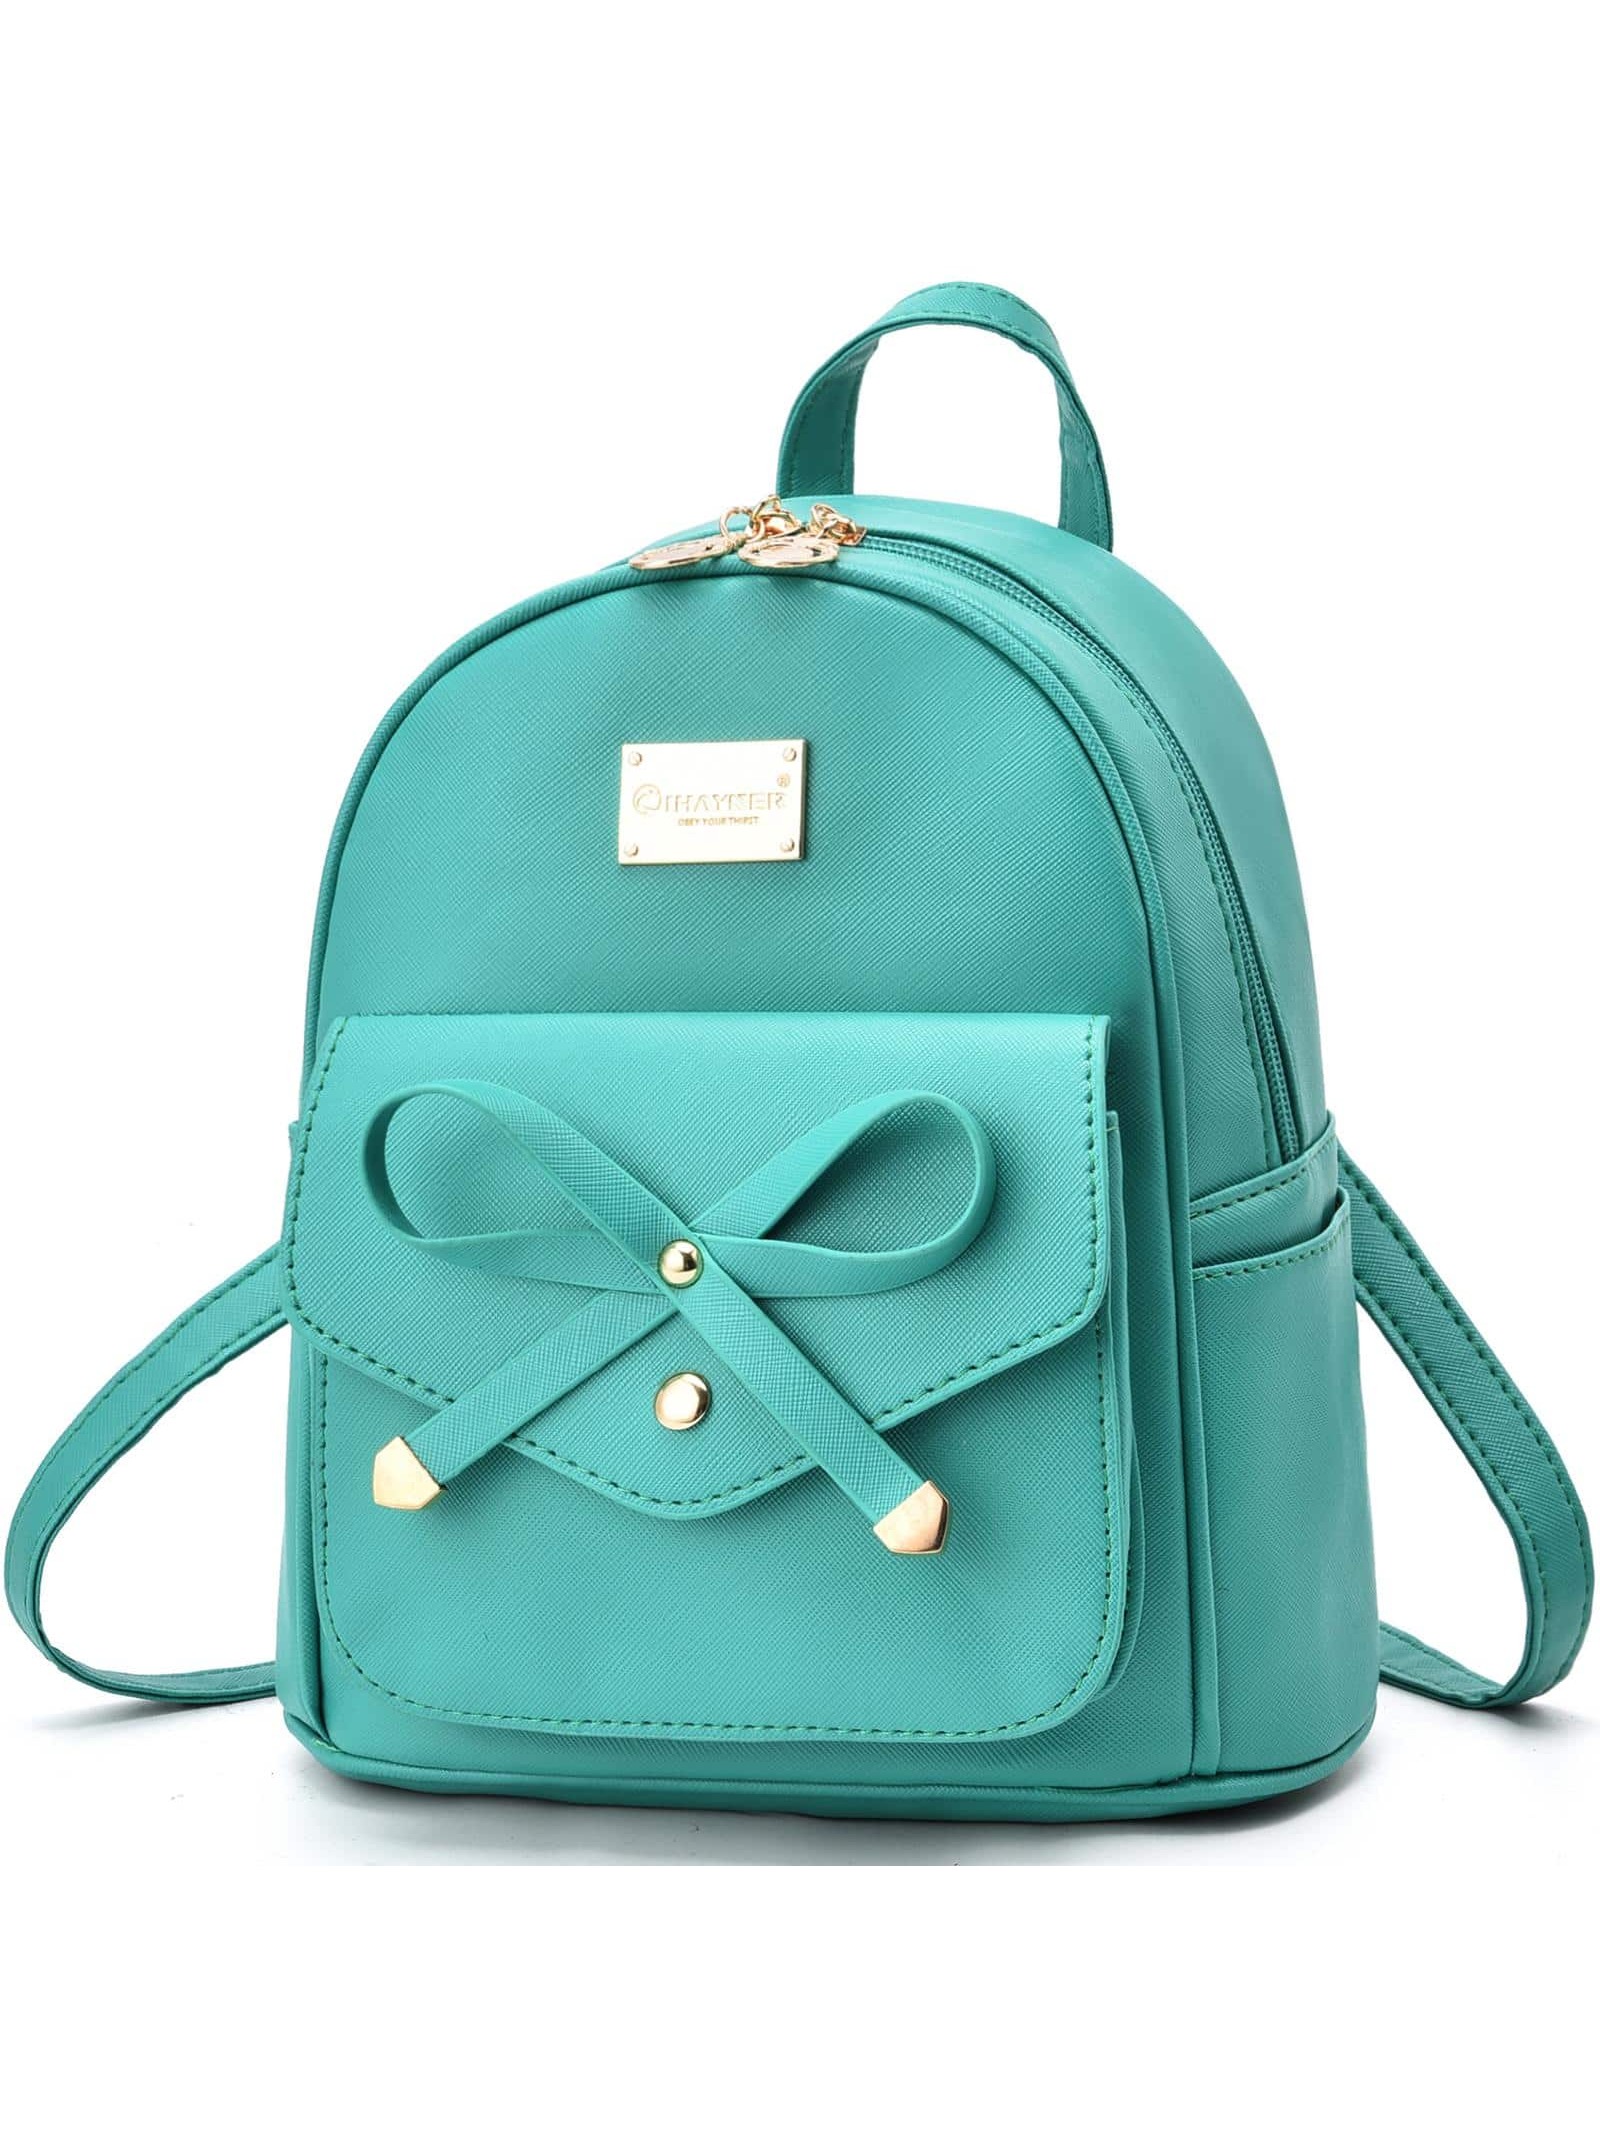 I IHAYNER, оливково-зеленый рюкзак женский с принтом тигра и животных школьный рюкзак для девочек подростков